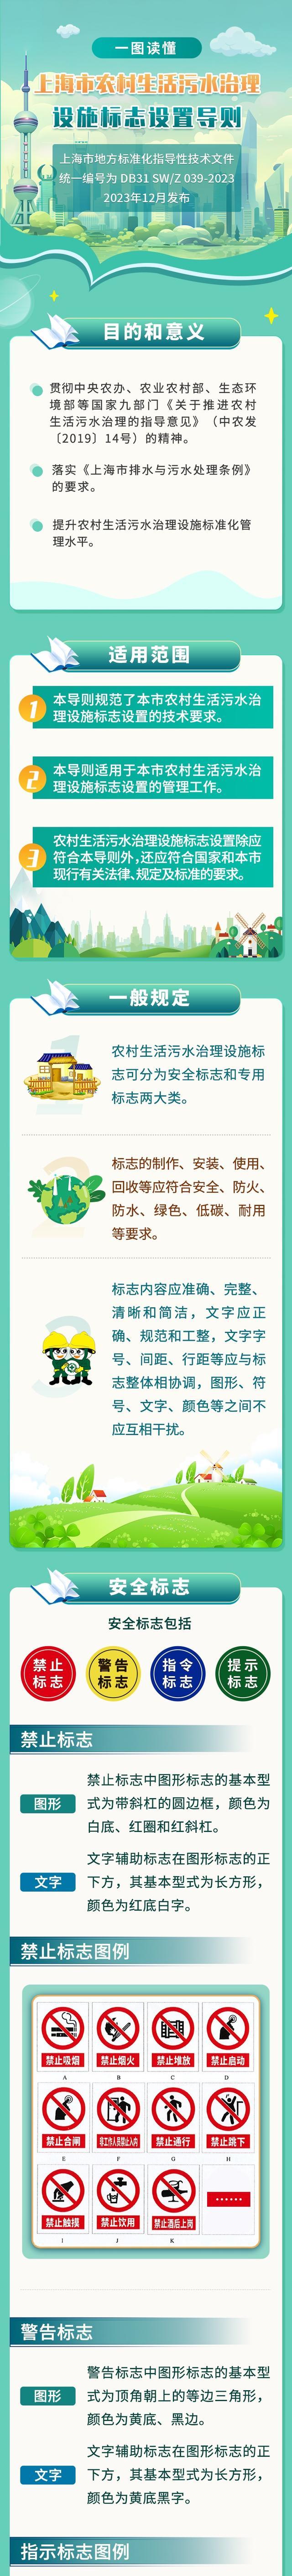 一图读懂丨上海市农村生活污水治理设施标志设置导则